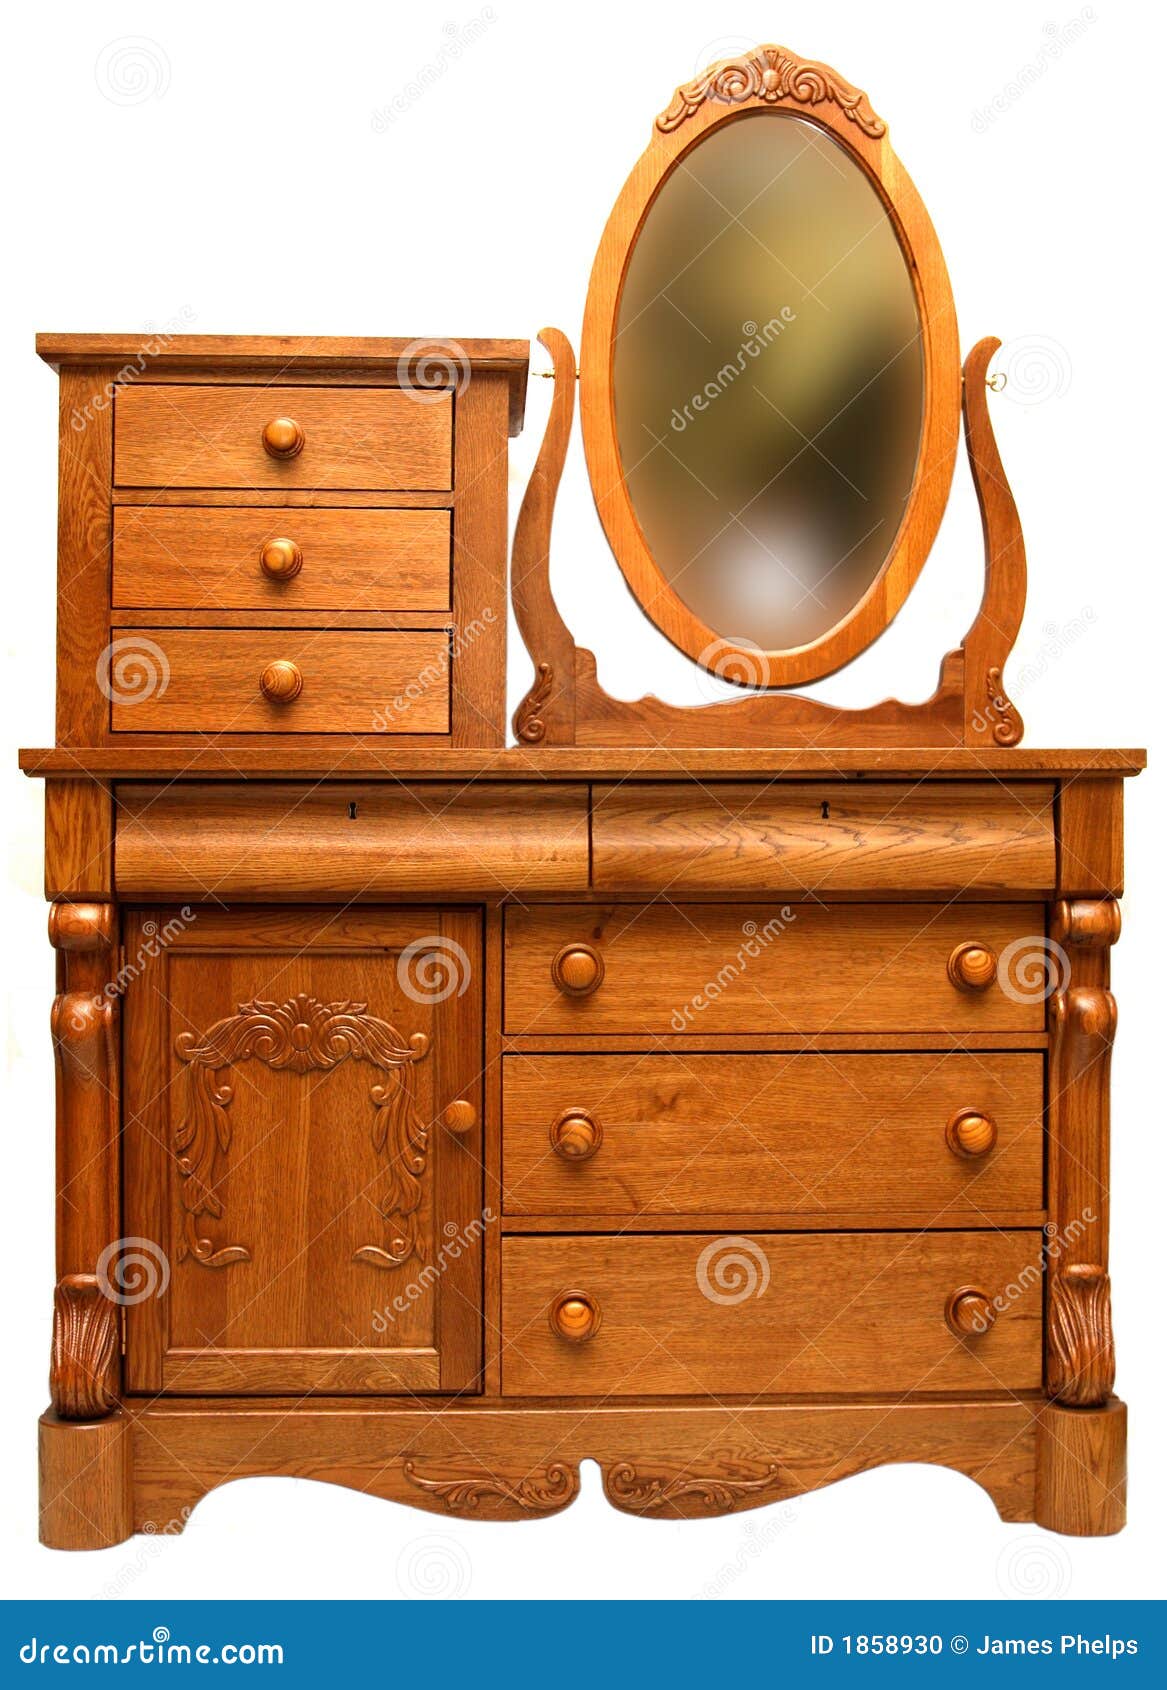 Victorian Bedroom Dresser Stock Photo Image Of Dresser 1858930